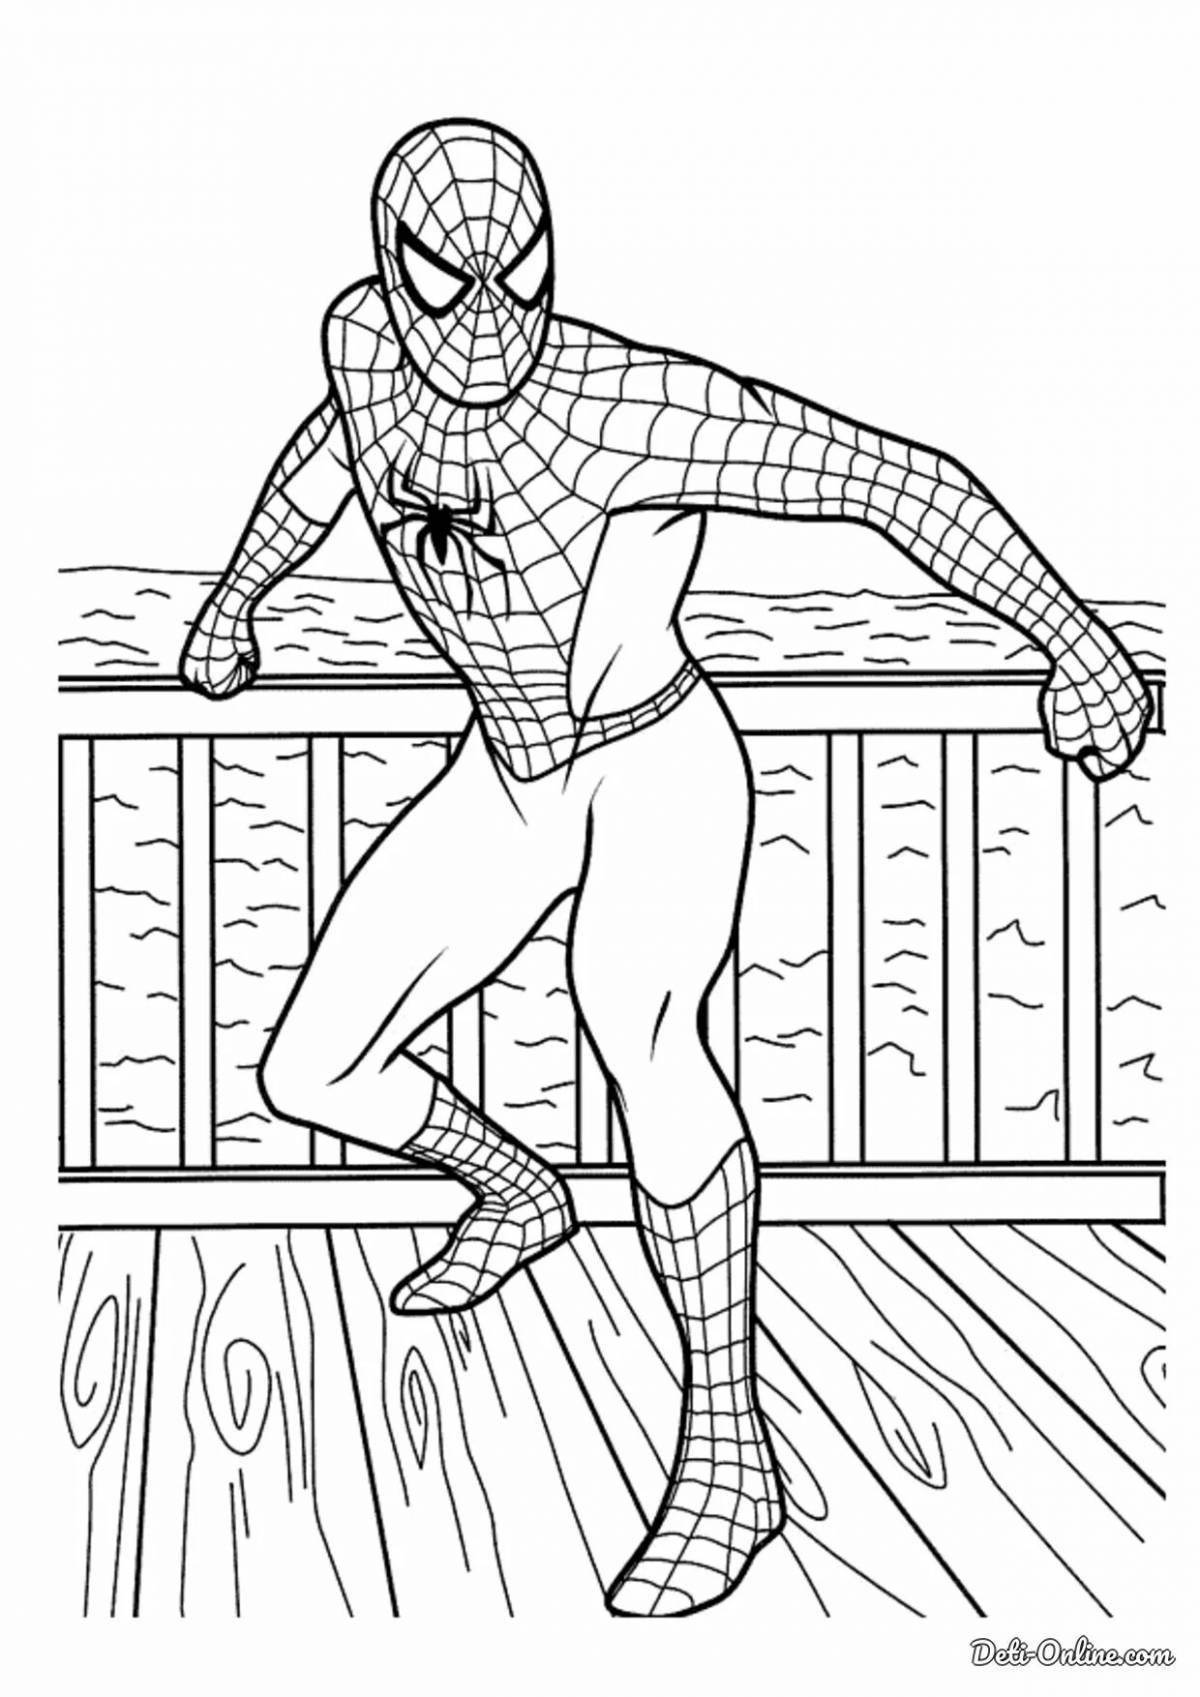 Великолепный рисунок человека-паука